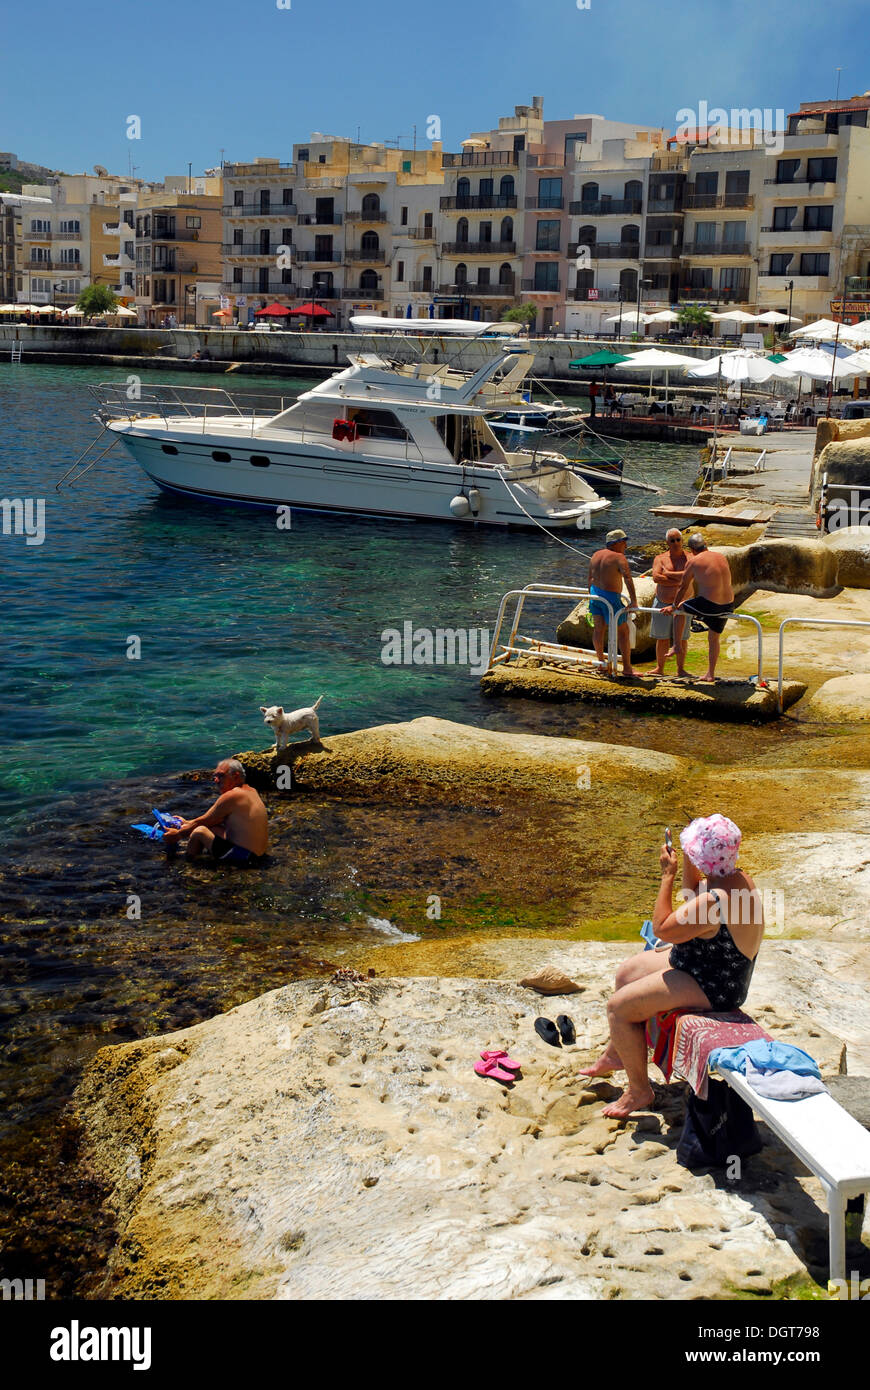 Bateaux dans la baie de Marsalforn, Marsalforn, île de Gozo, Malte, mer Méditerranée, Europe Banque D'Images